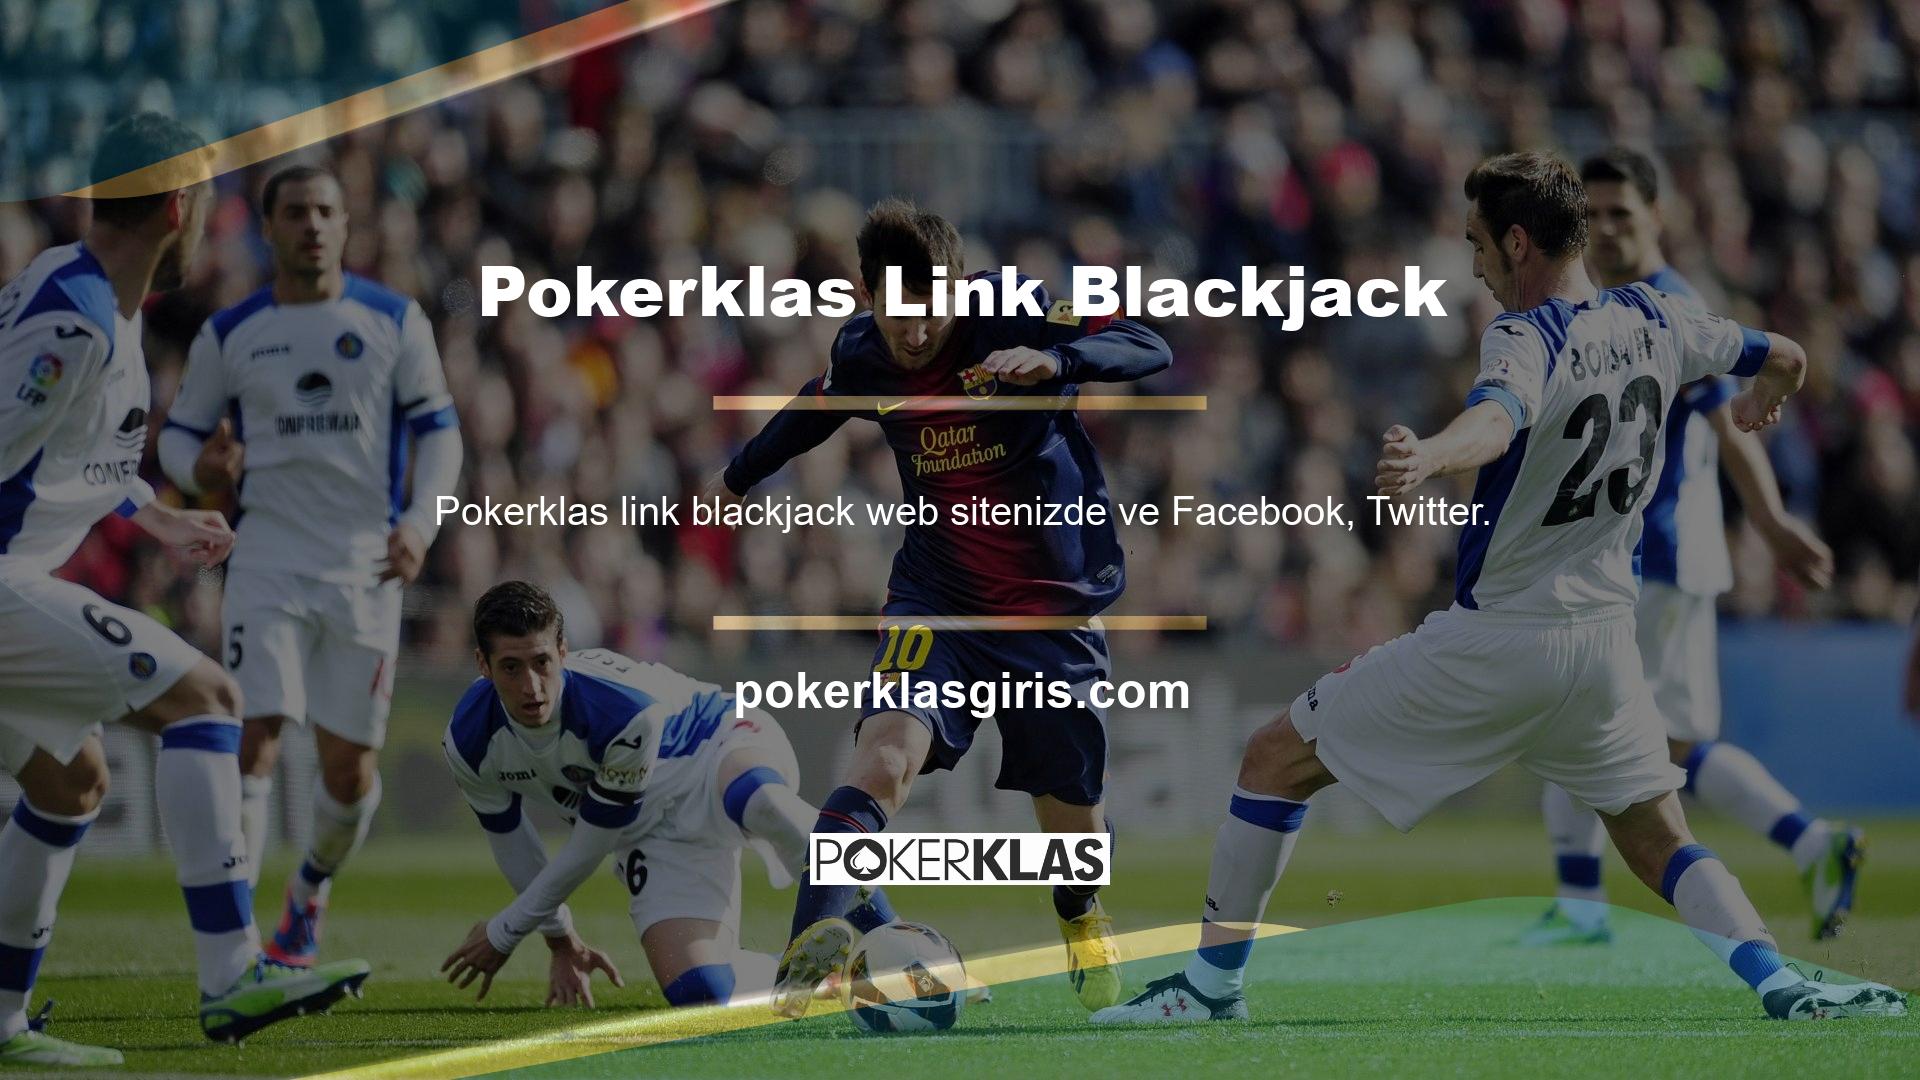 com, Instagram gibi web sitelerinde tanıtım yaparak gelir elde etmek ister misiniz? Daha fazla ayrıntı almak için lütfen URL'ye Pokerklas link blackjack'i girin, hesap yöneticisine ulaşın ve Pokerklas Reklam Müdürü ile iletişime geçin